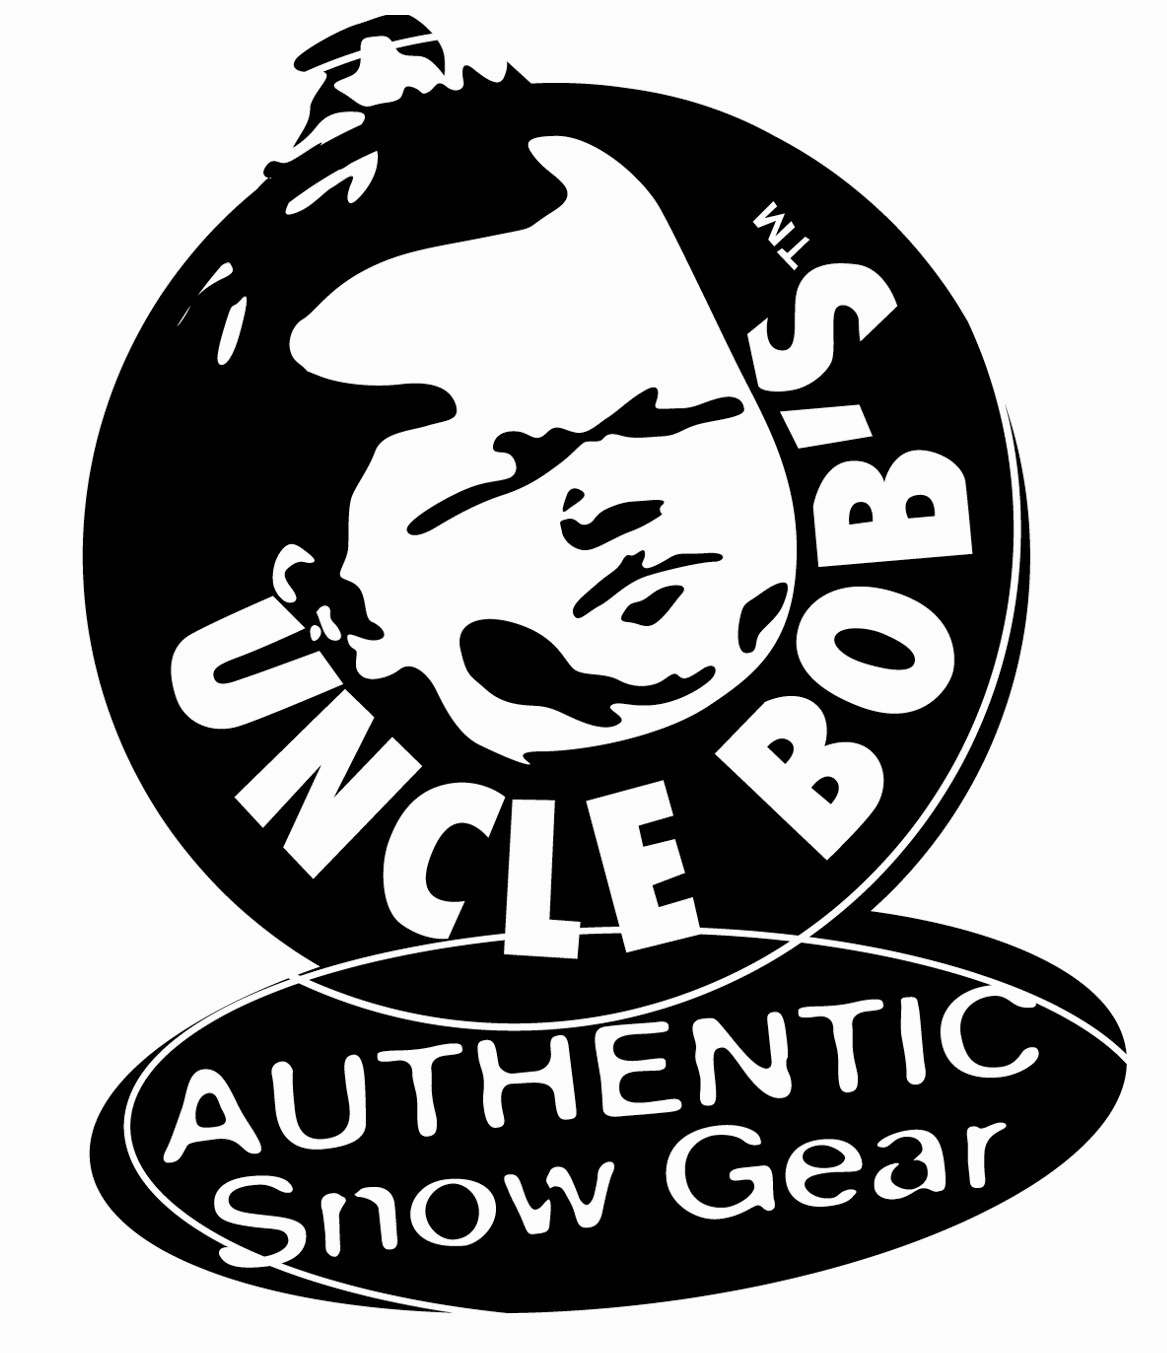  UNCLE BOB'S AUTHENTIC SNOW GEAR